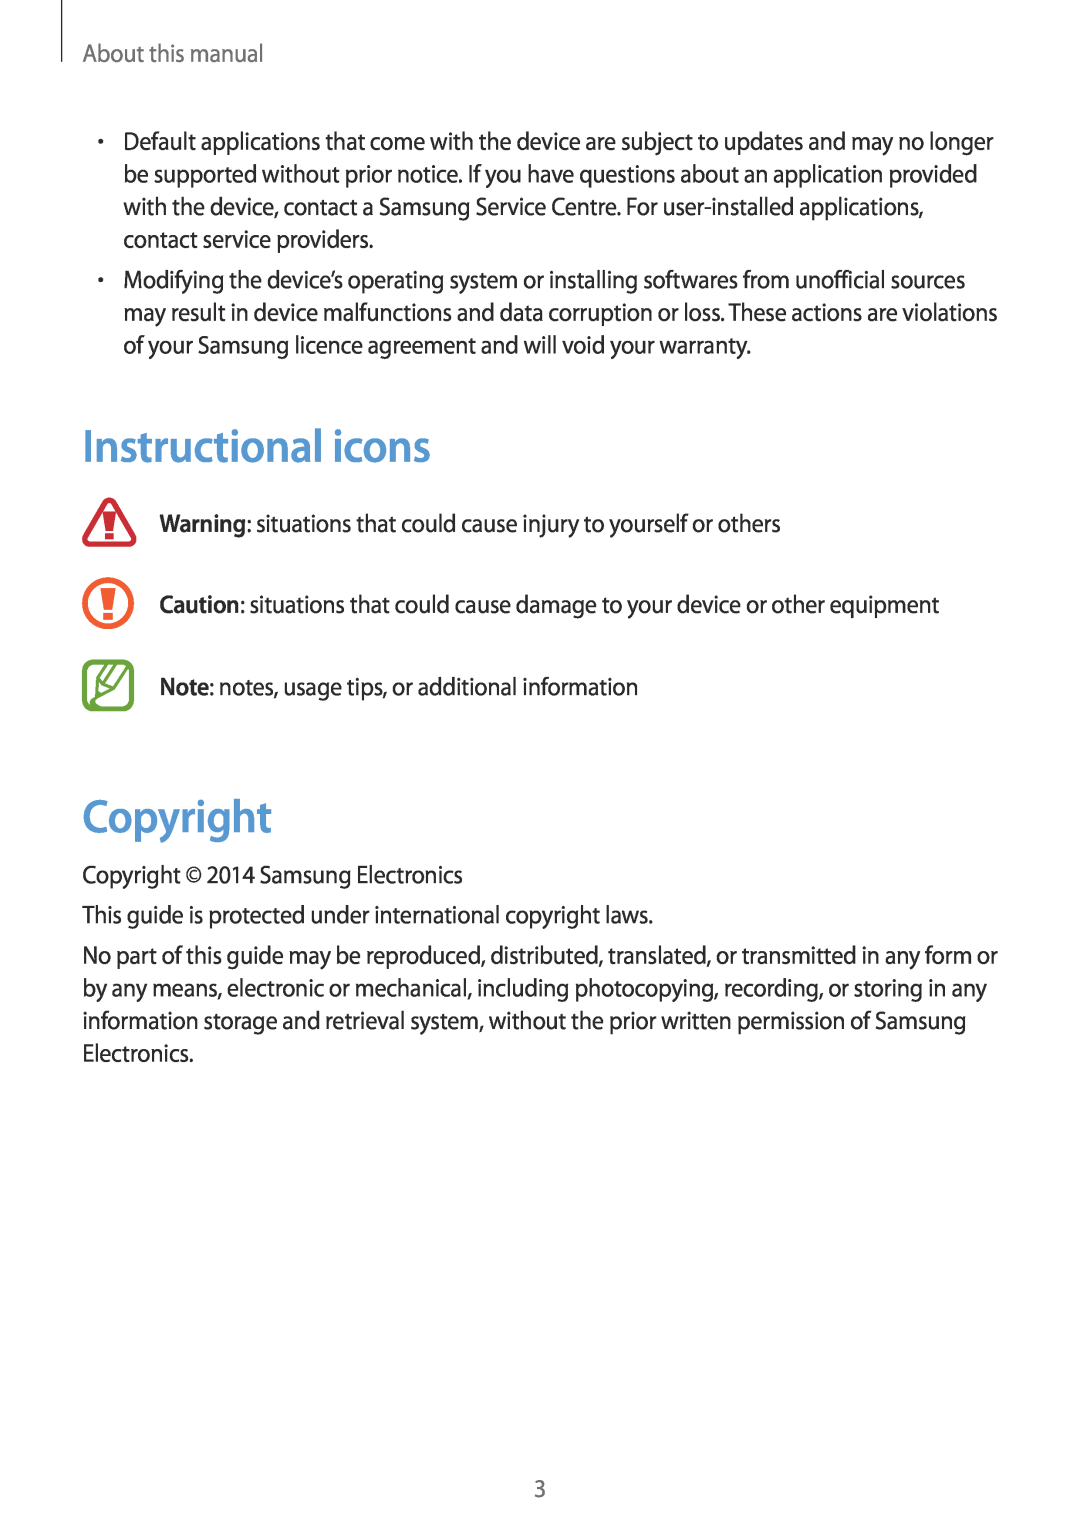 Samsung SM-P6000ZKAATO, SM-P6000ZWAXEO, SM-P6000ZKEDBT, SM-P6000ZKAEUR Instructional icons, Copyright, About this manual 